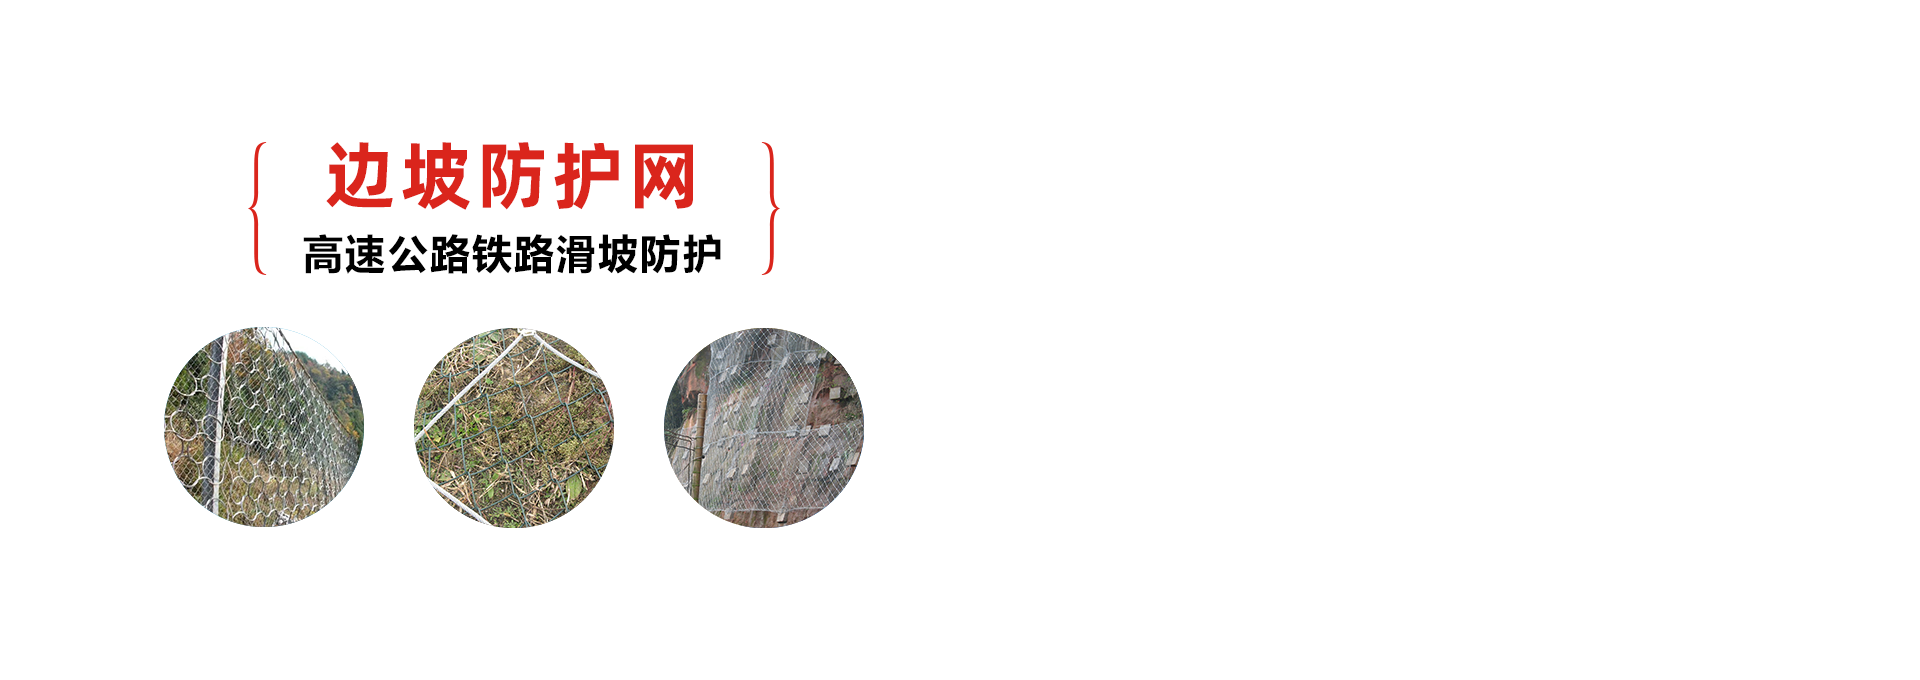 边坡防护网-钢丝绳网-边坡绿化施工 - 安平县腾旭金属丝网制品厂